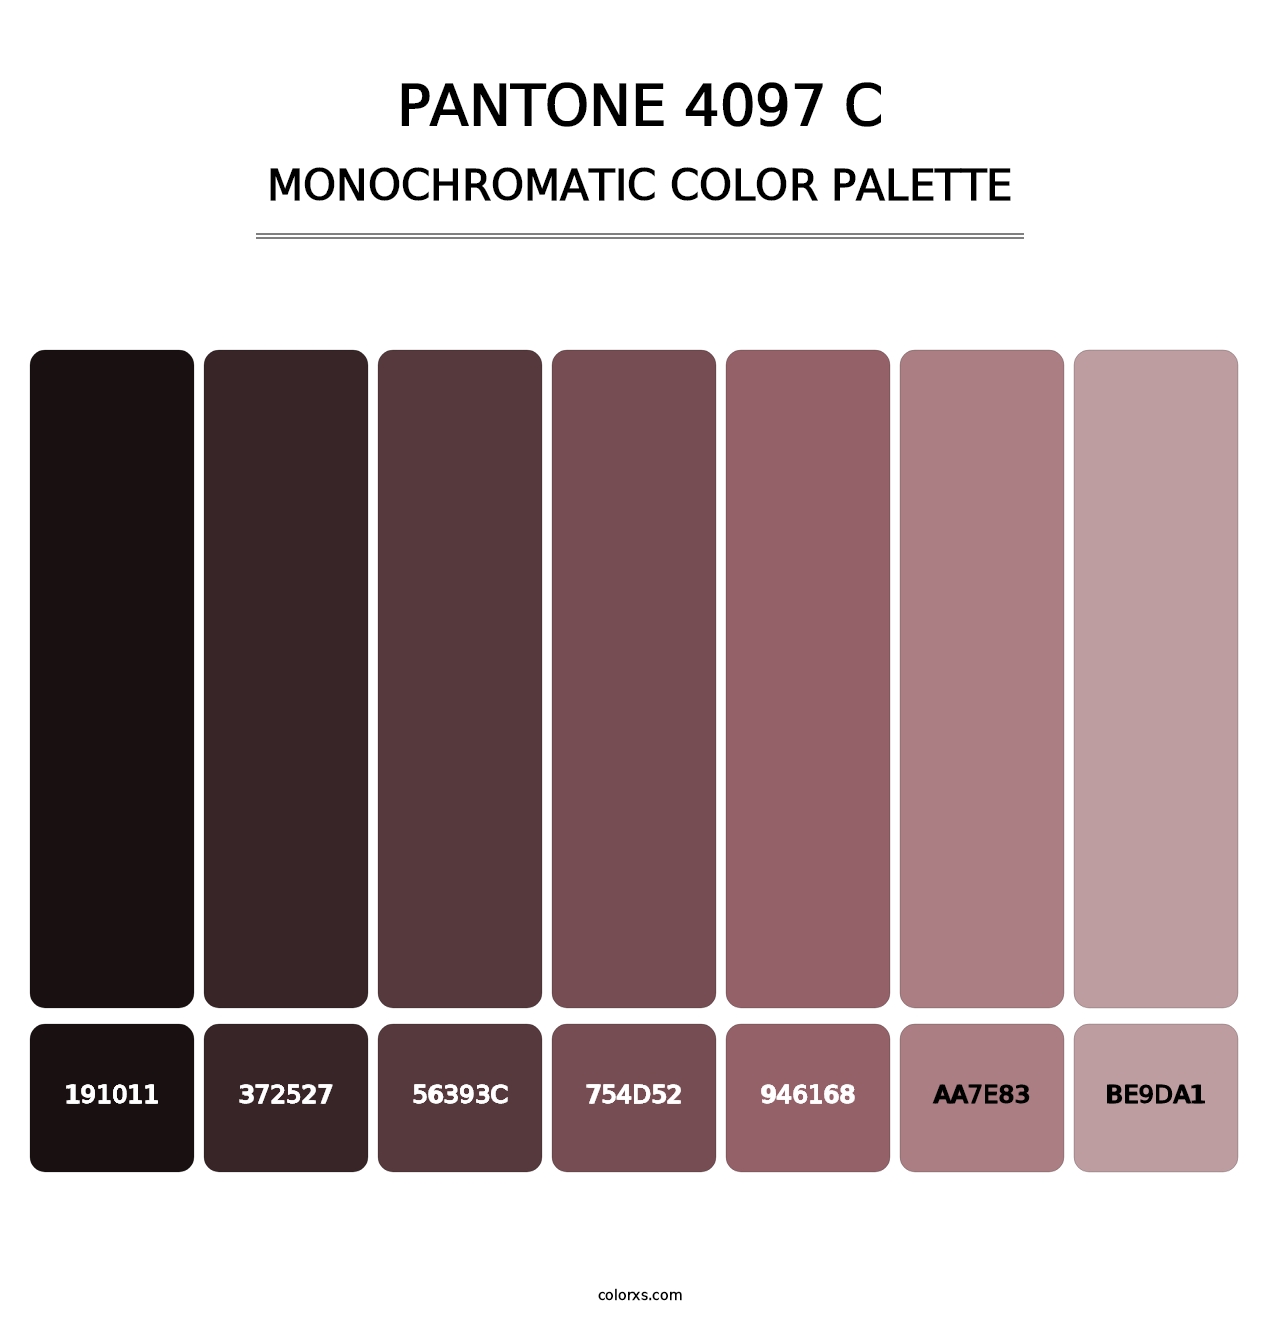 PANTONE 4097 C - Monochromatic Color Palette